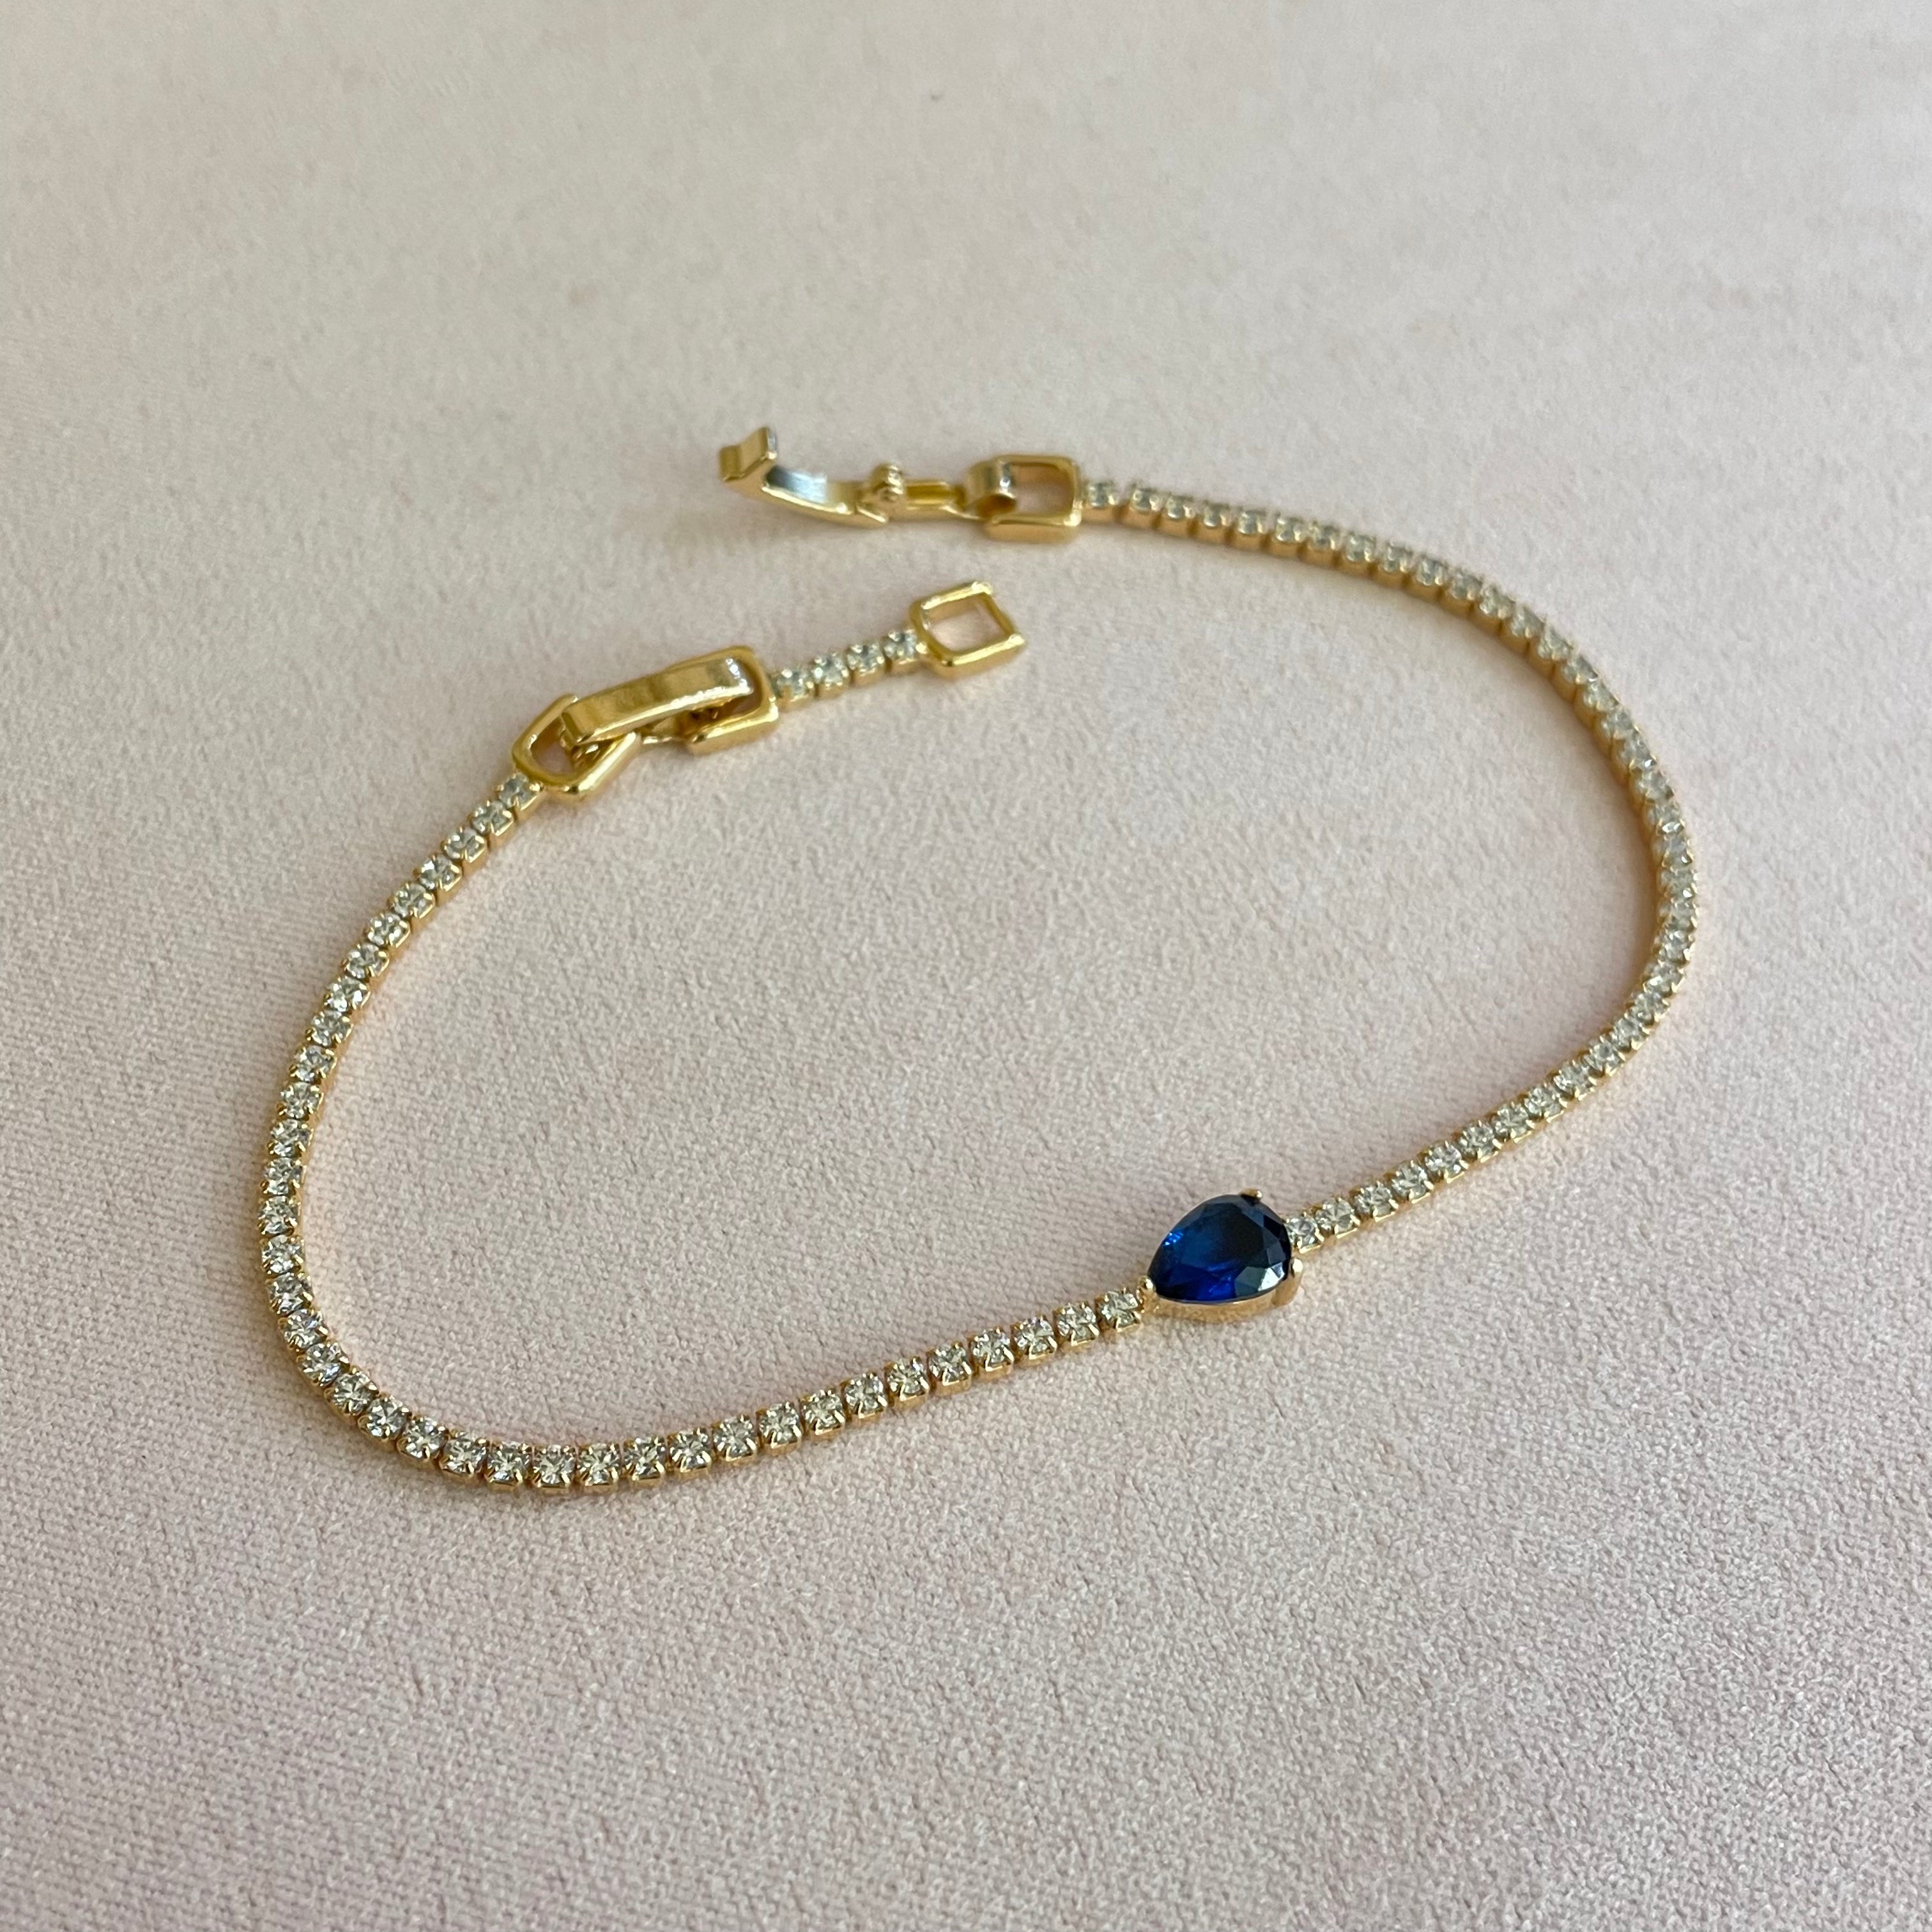 Teardrop royal blue C.Z bracelet